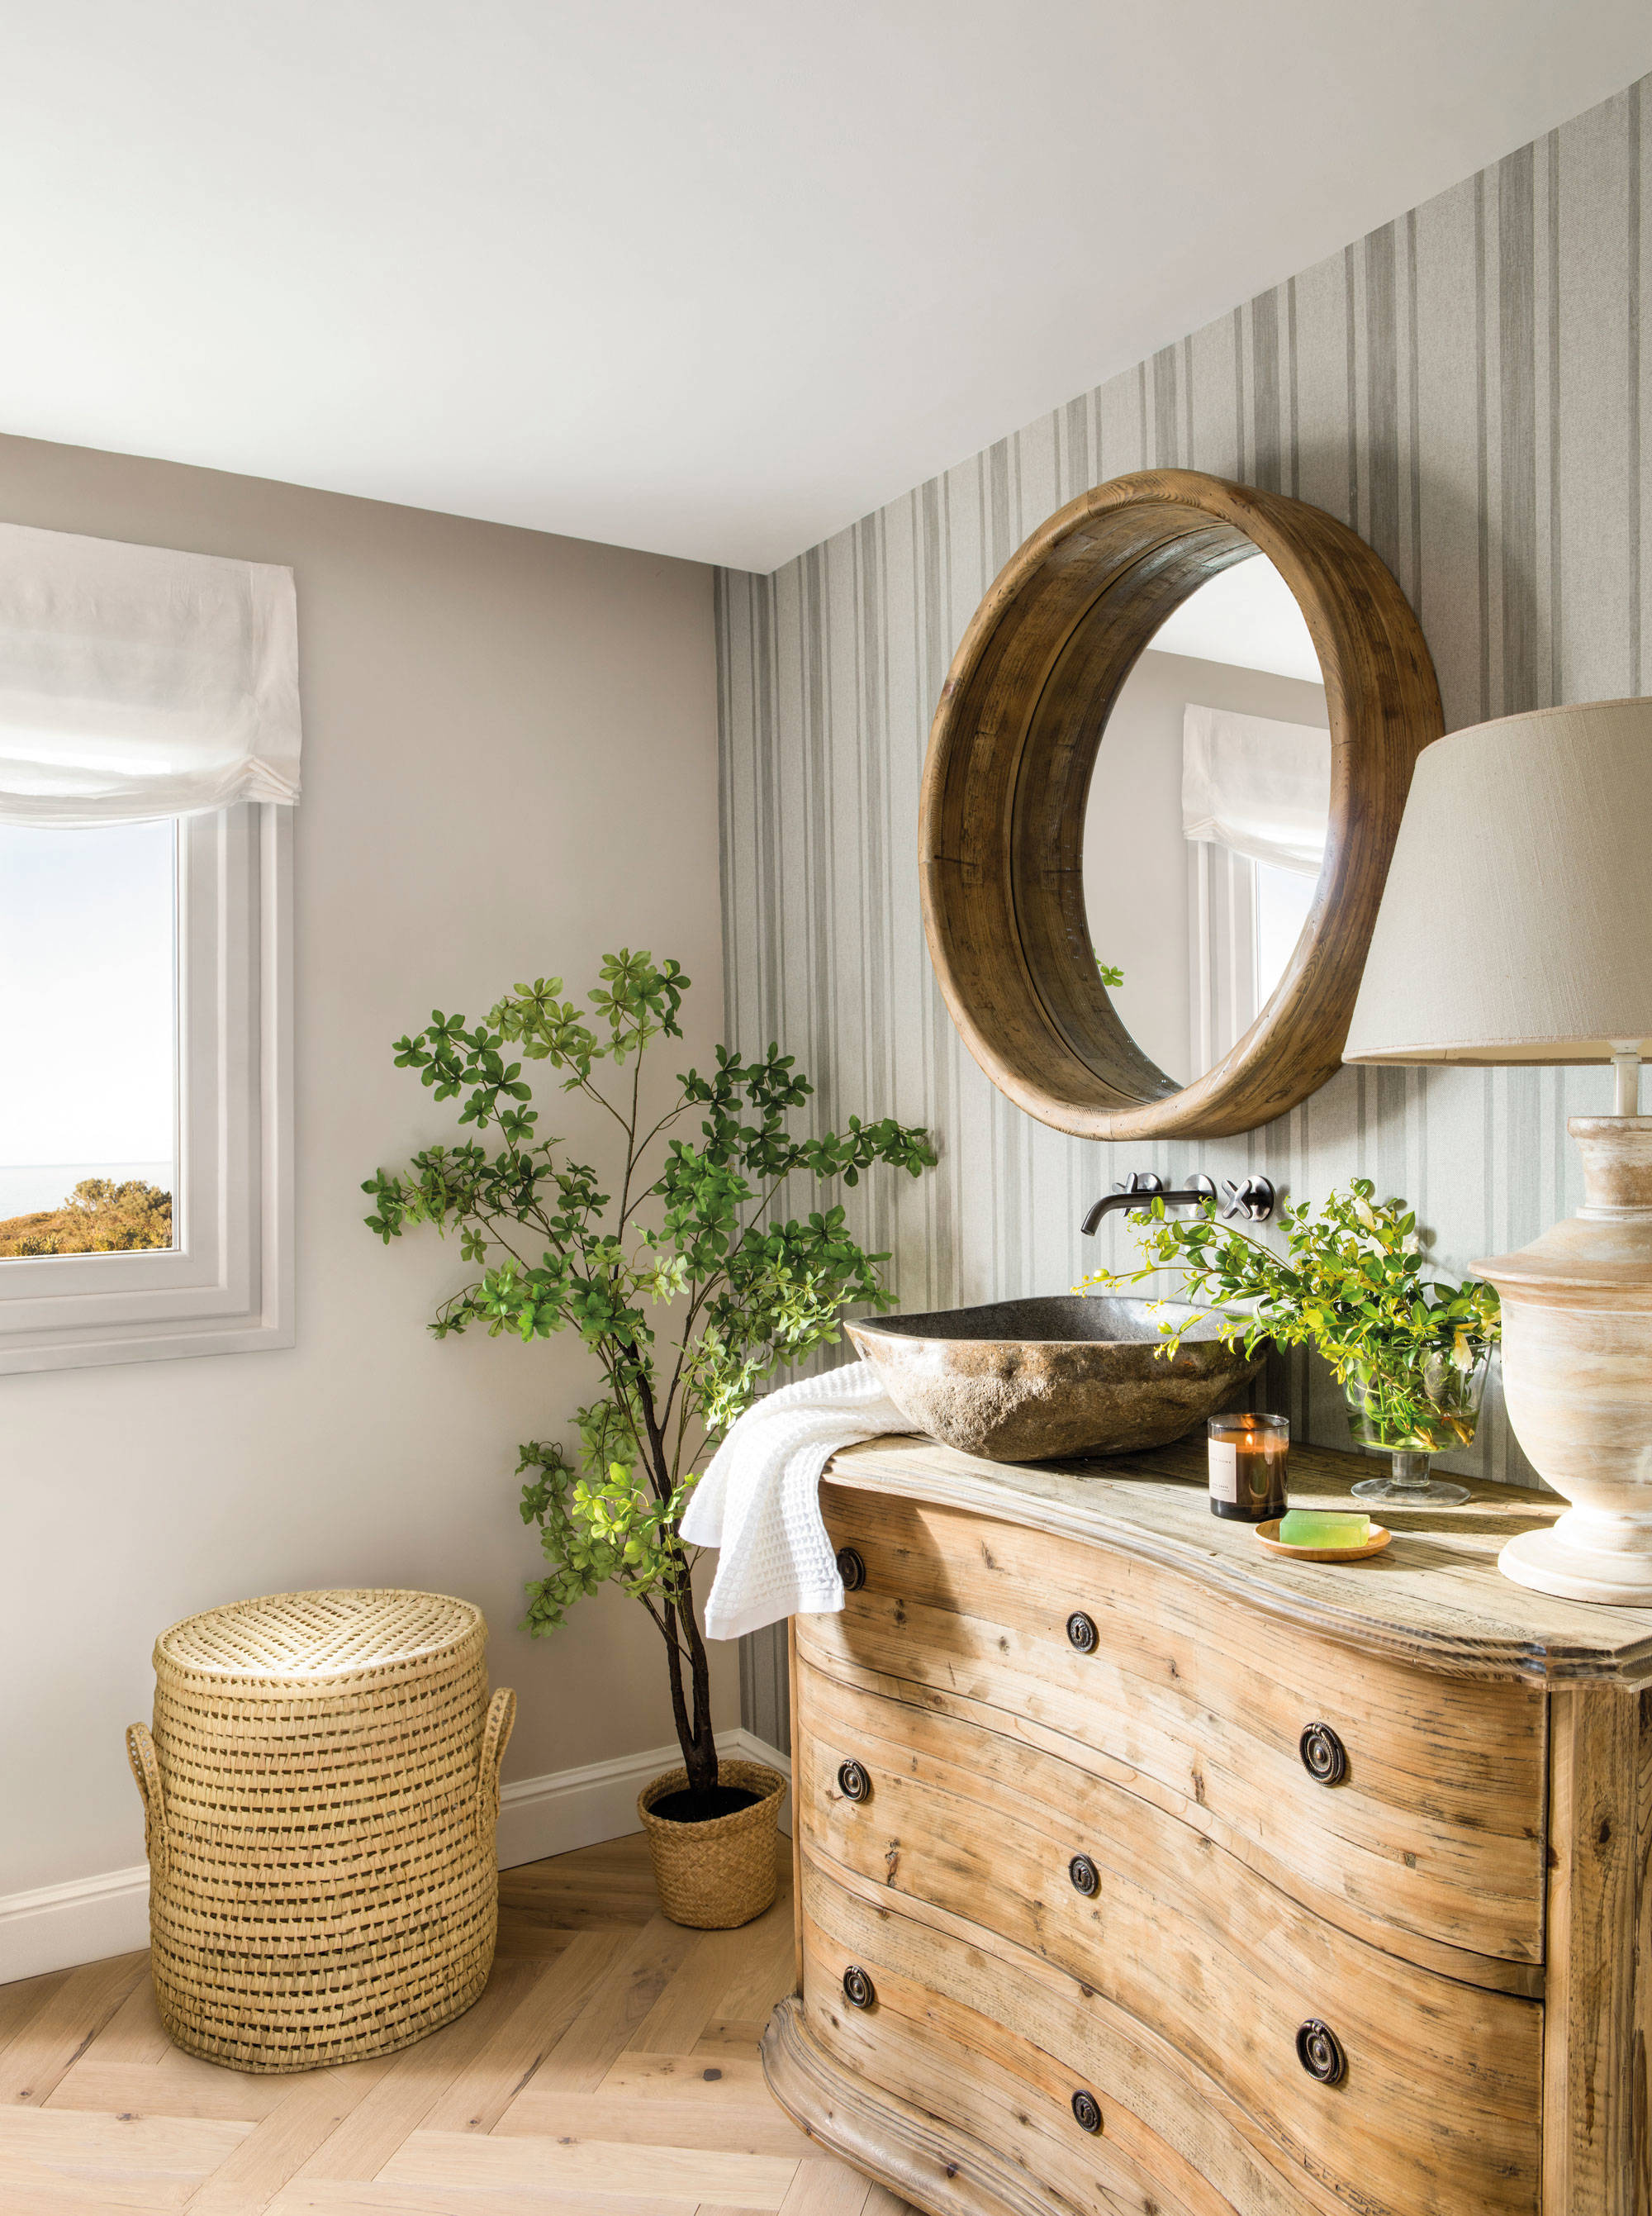 Baño de estilo rústico con mueble de madera y espejo.